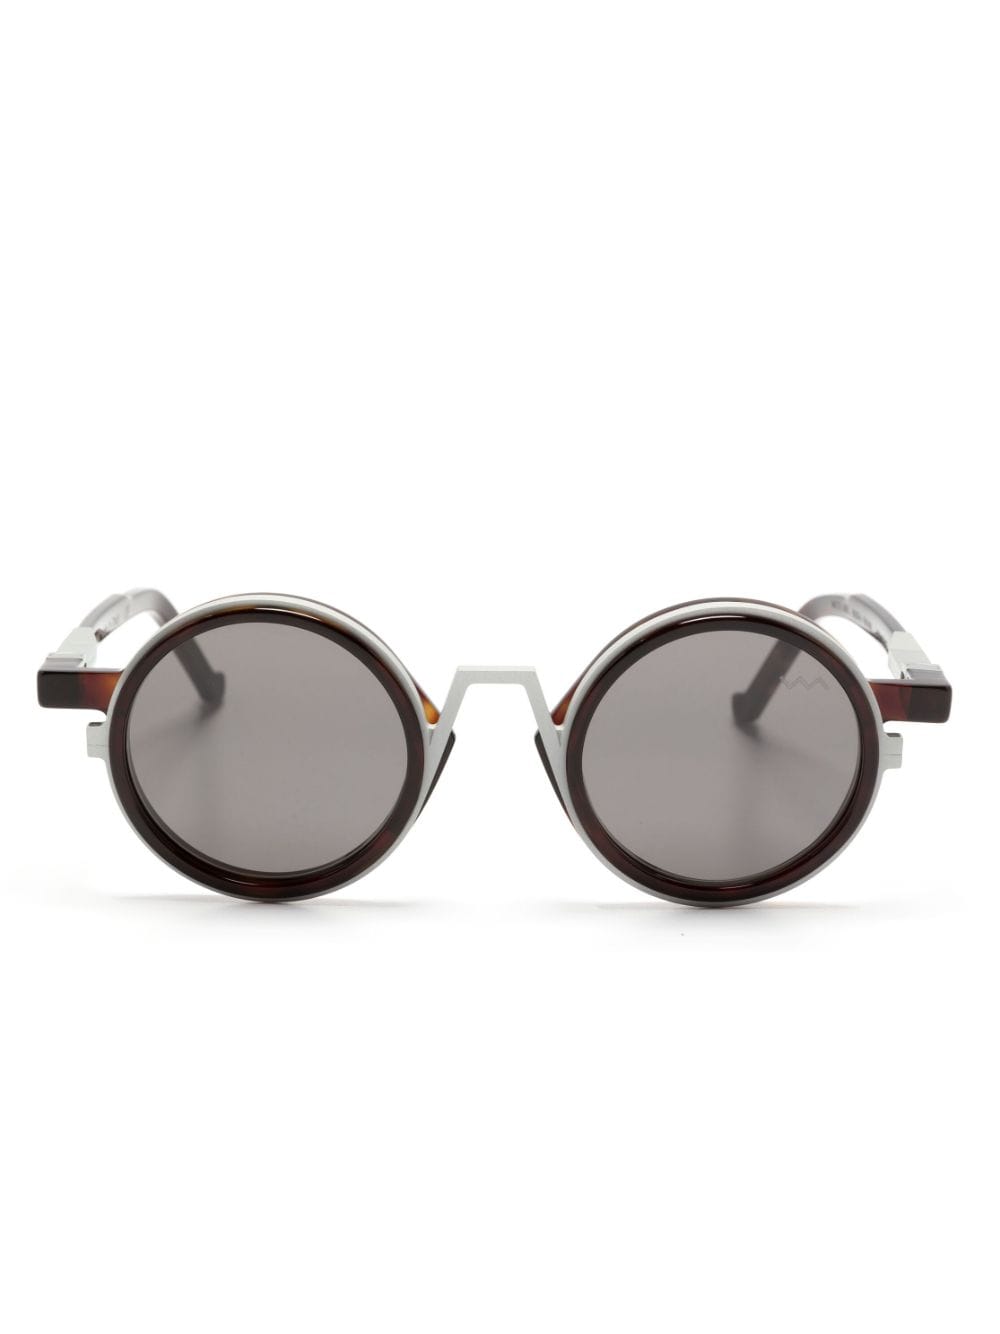 Vava Eyewear Wl0046 Round-frame Sunglasses In Silver